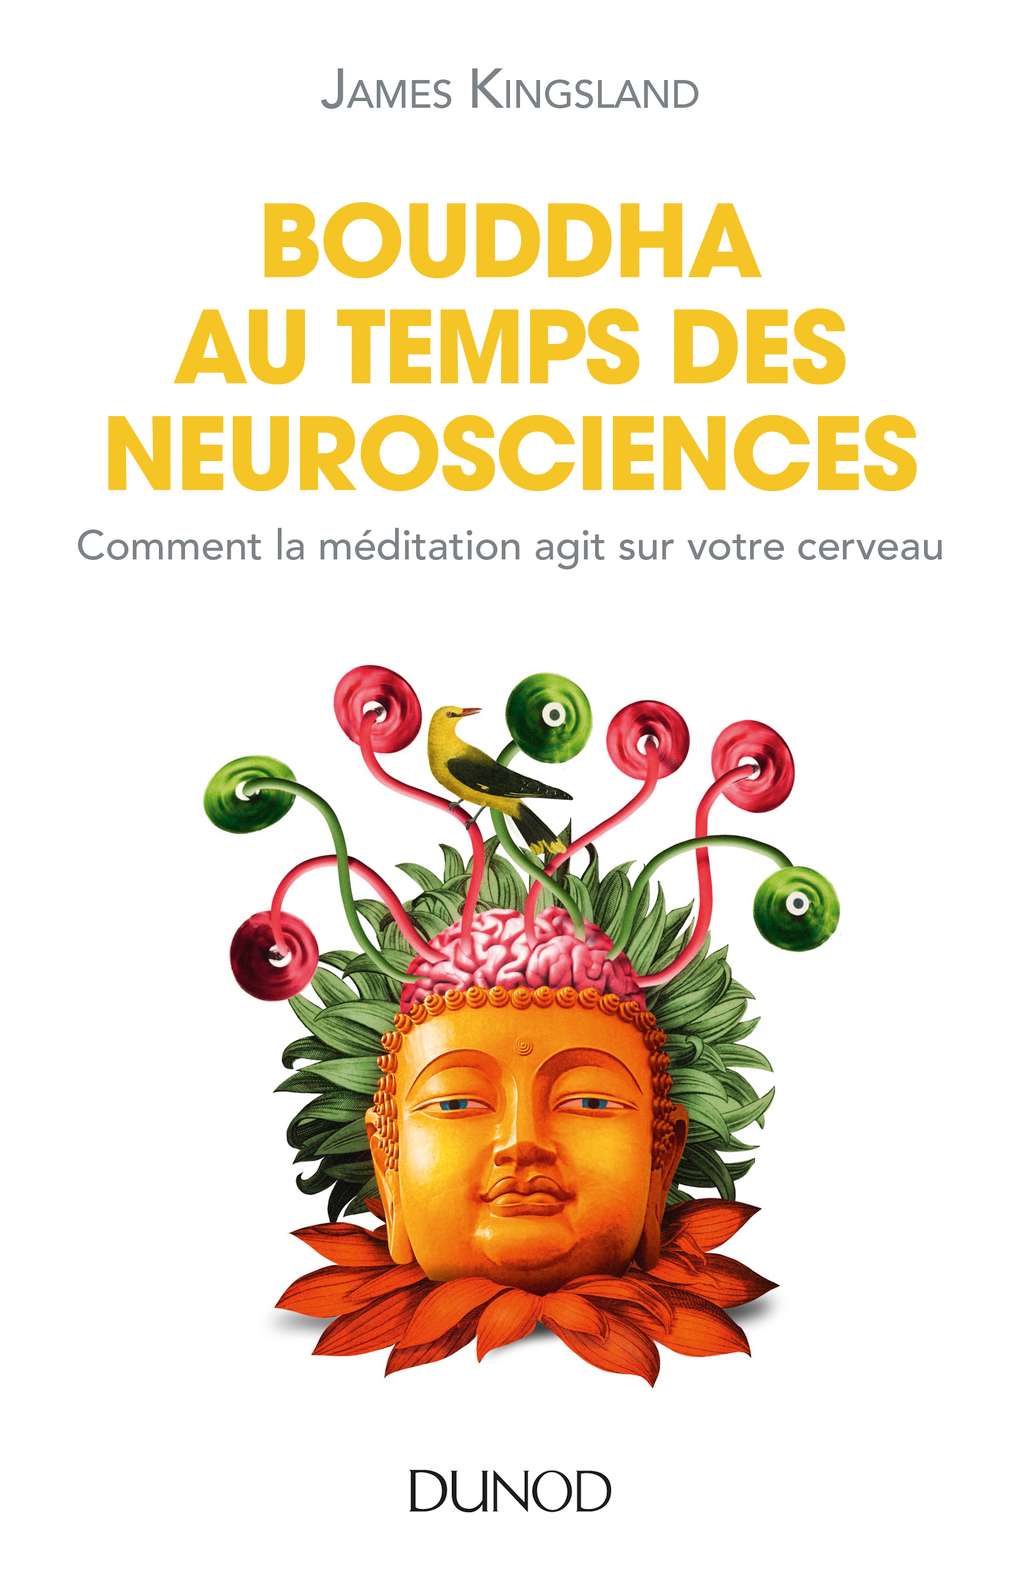 Découvrez le livre de James Kingsland <em><a href="http://www.dunod.com/sciences-techniques/culture-scientifique/themes/bouddha-au-temps-des-neurosciences" title="Bouddha au temps des neurosciences - Comment la méditation agit sur notre cerveau" target="_blank">Bouddha au temps des neurosciences</a></em>. © Dunod